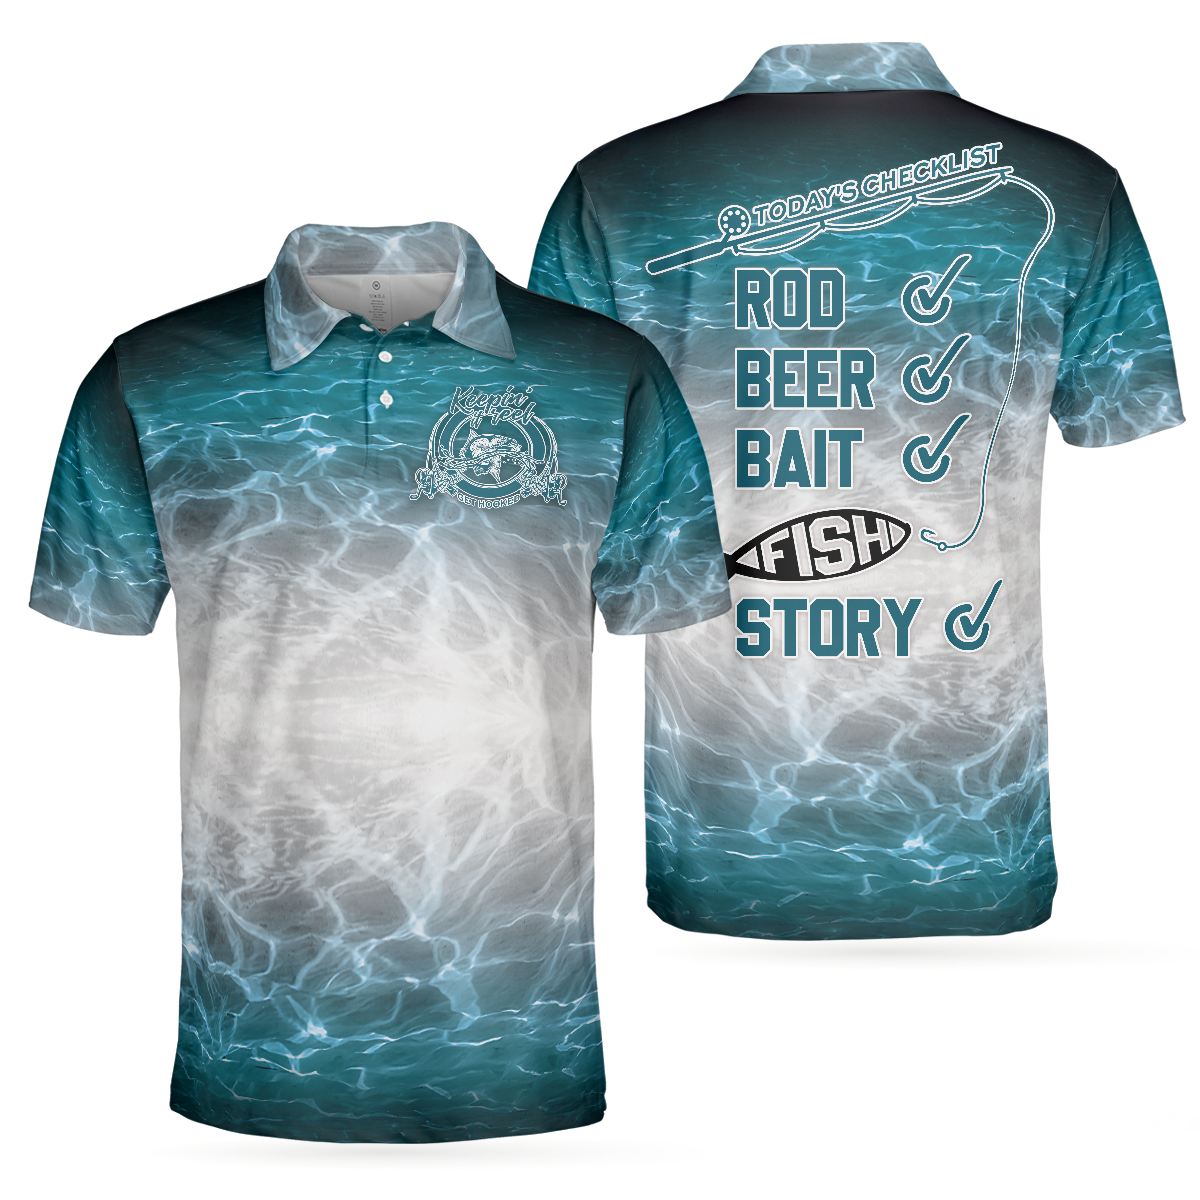 Best Ocean Fishing Men Polo Shirt, Fishing Checklist Rod Beer Bait Fish Story Shirt For Men, Gift For Fishing